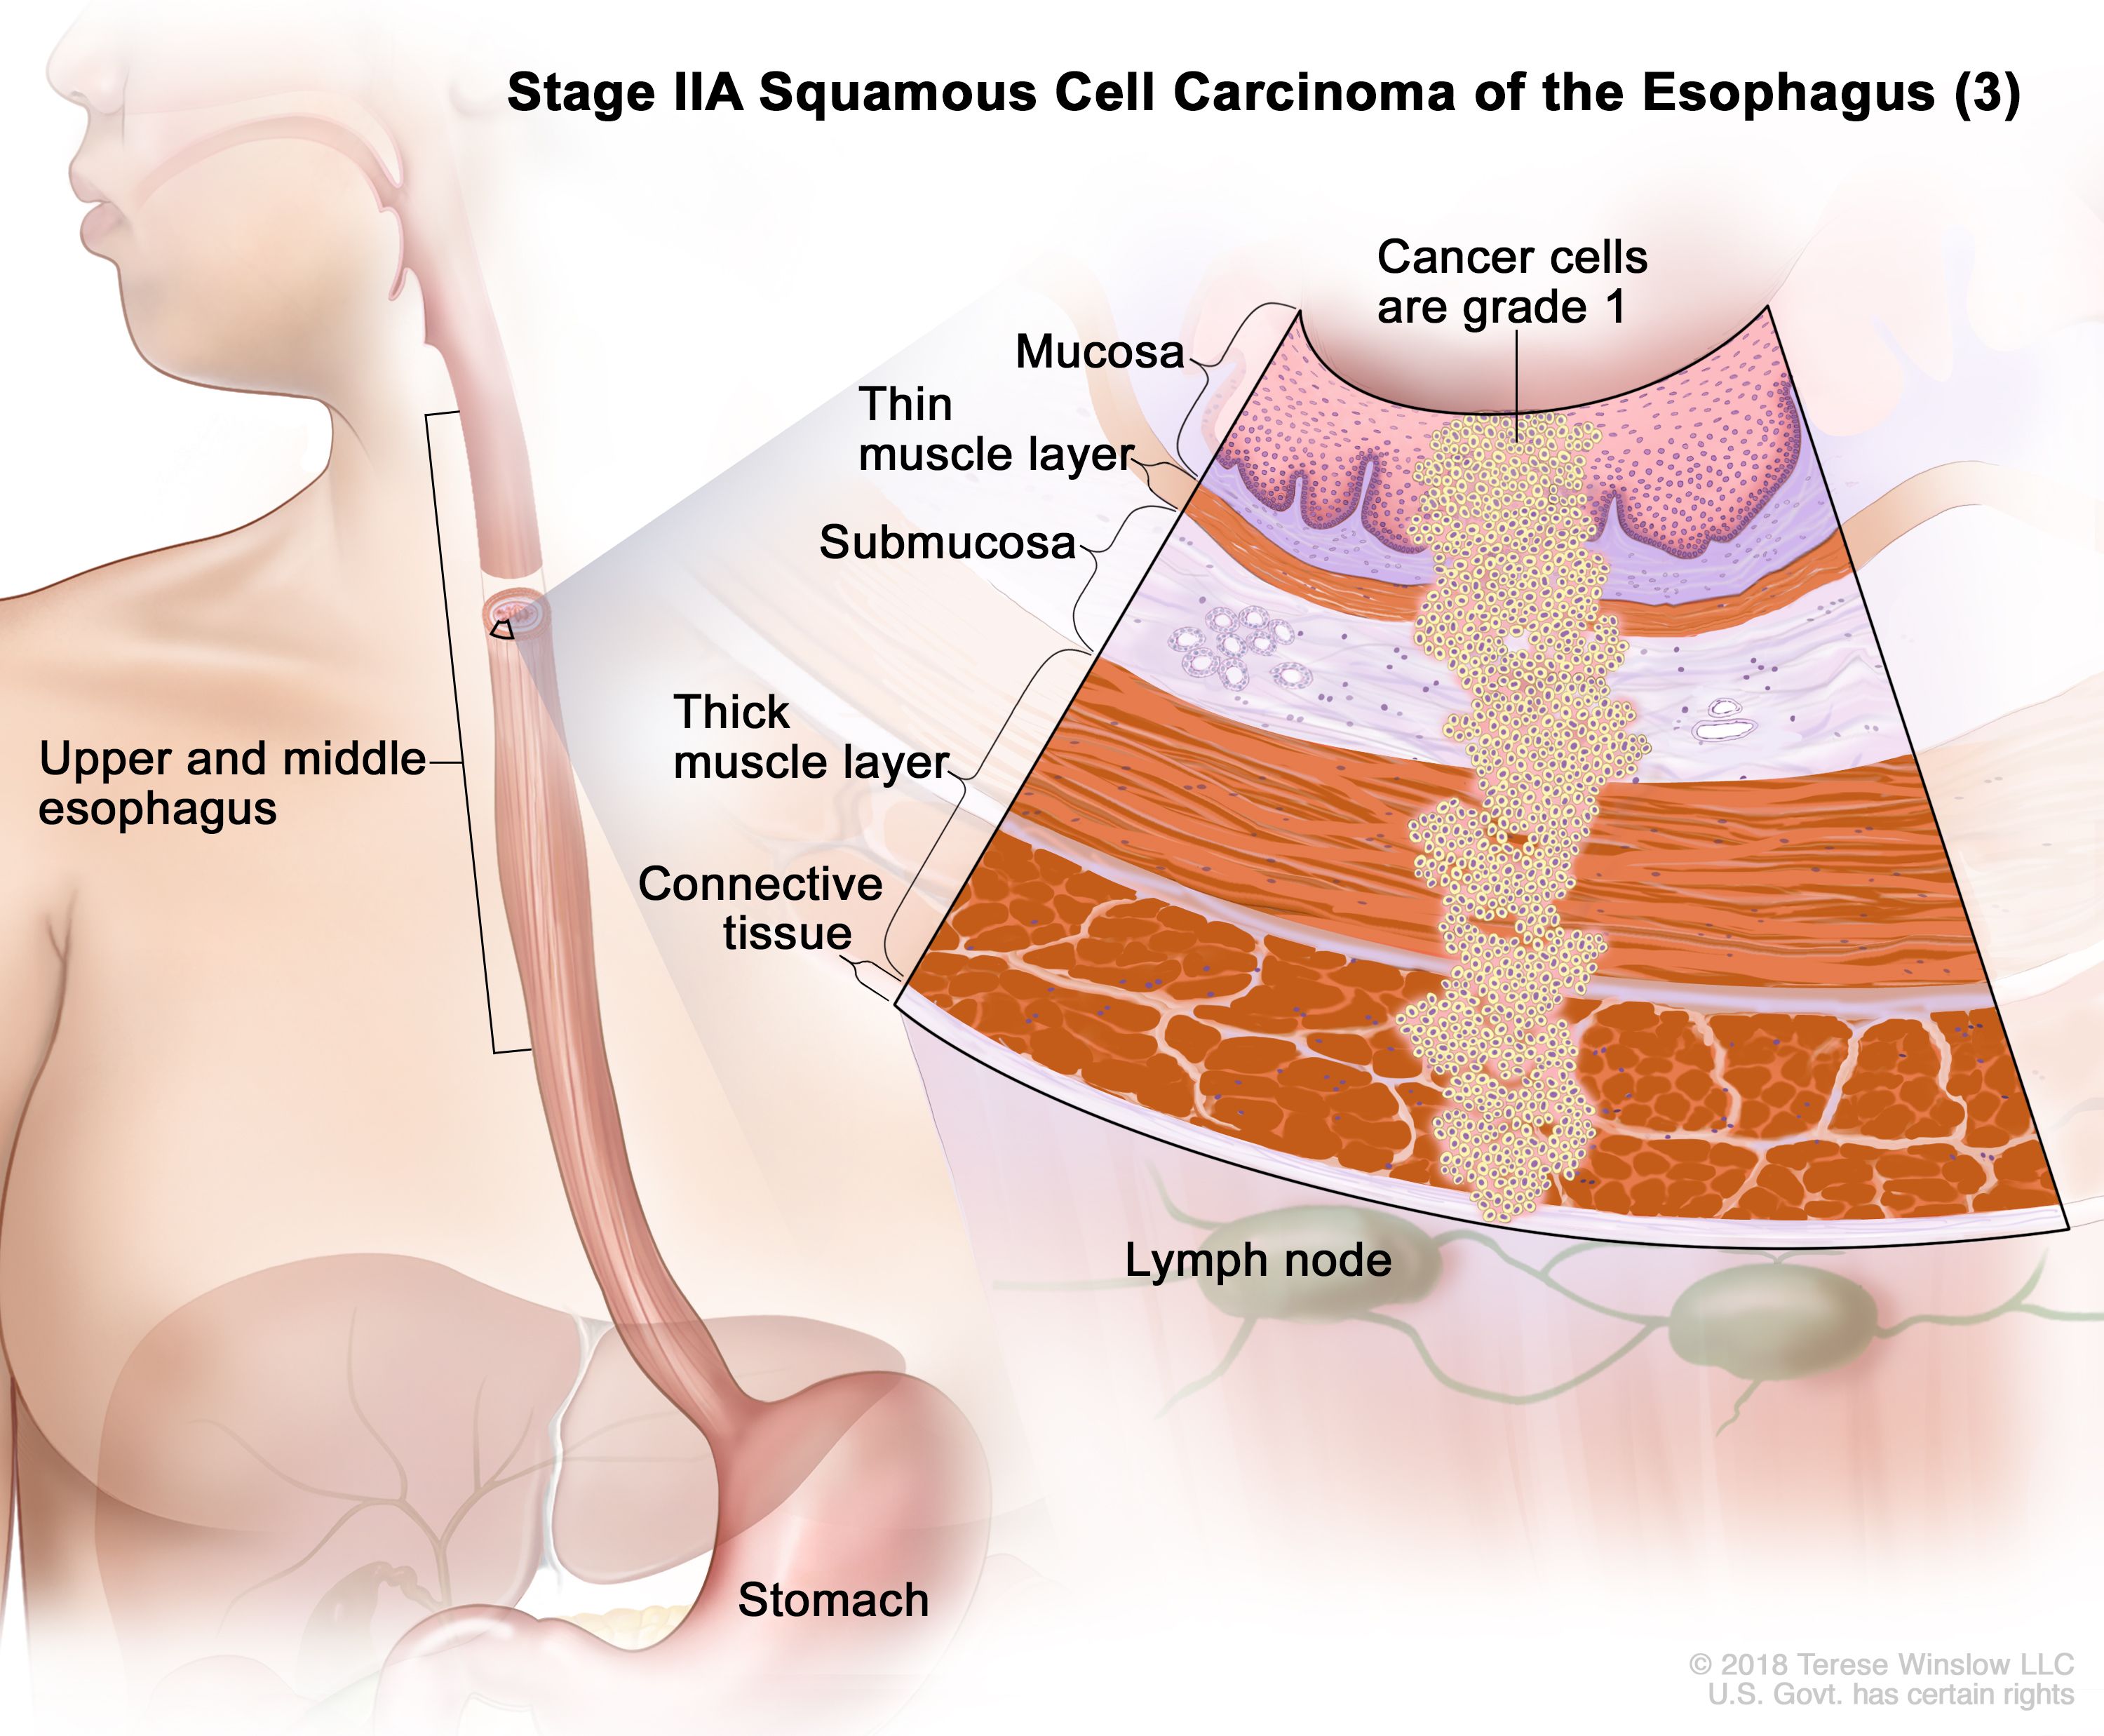 Karsinoma sel skuamosa tahap IIA esofagus